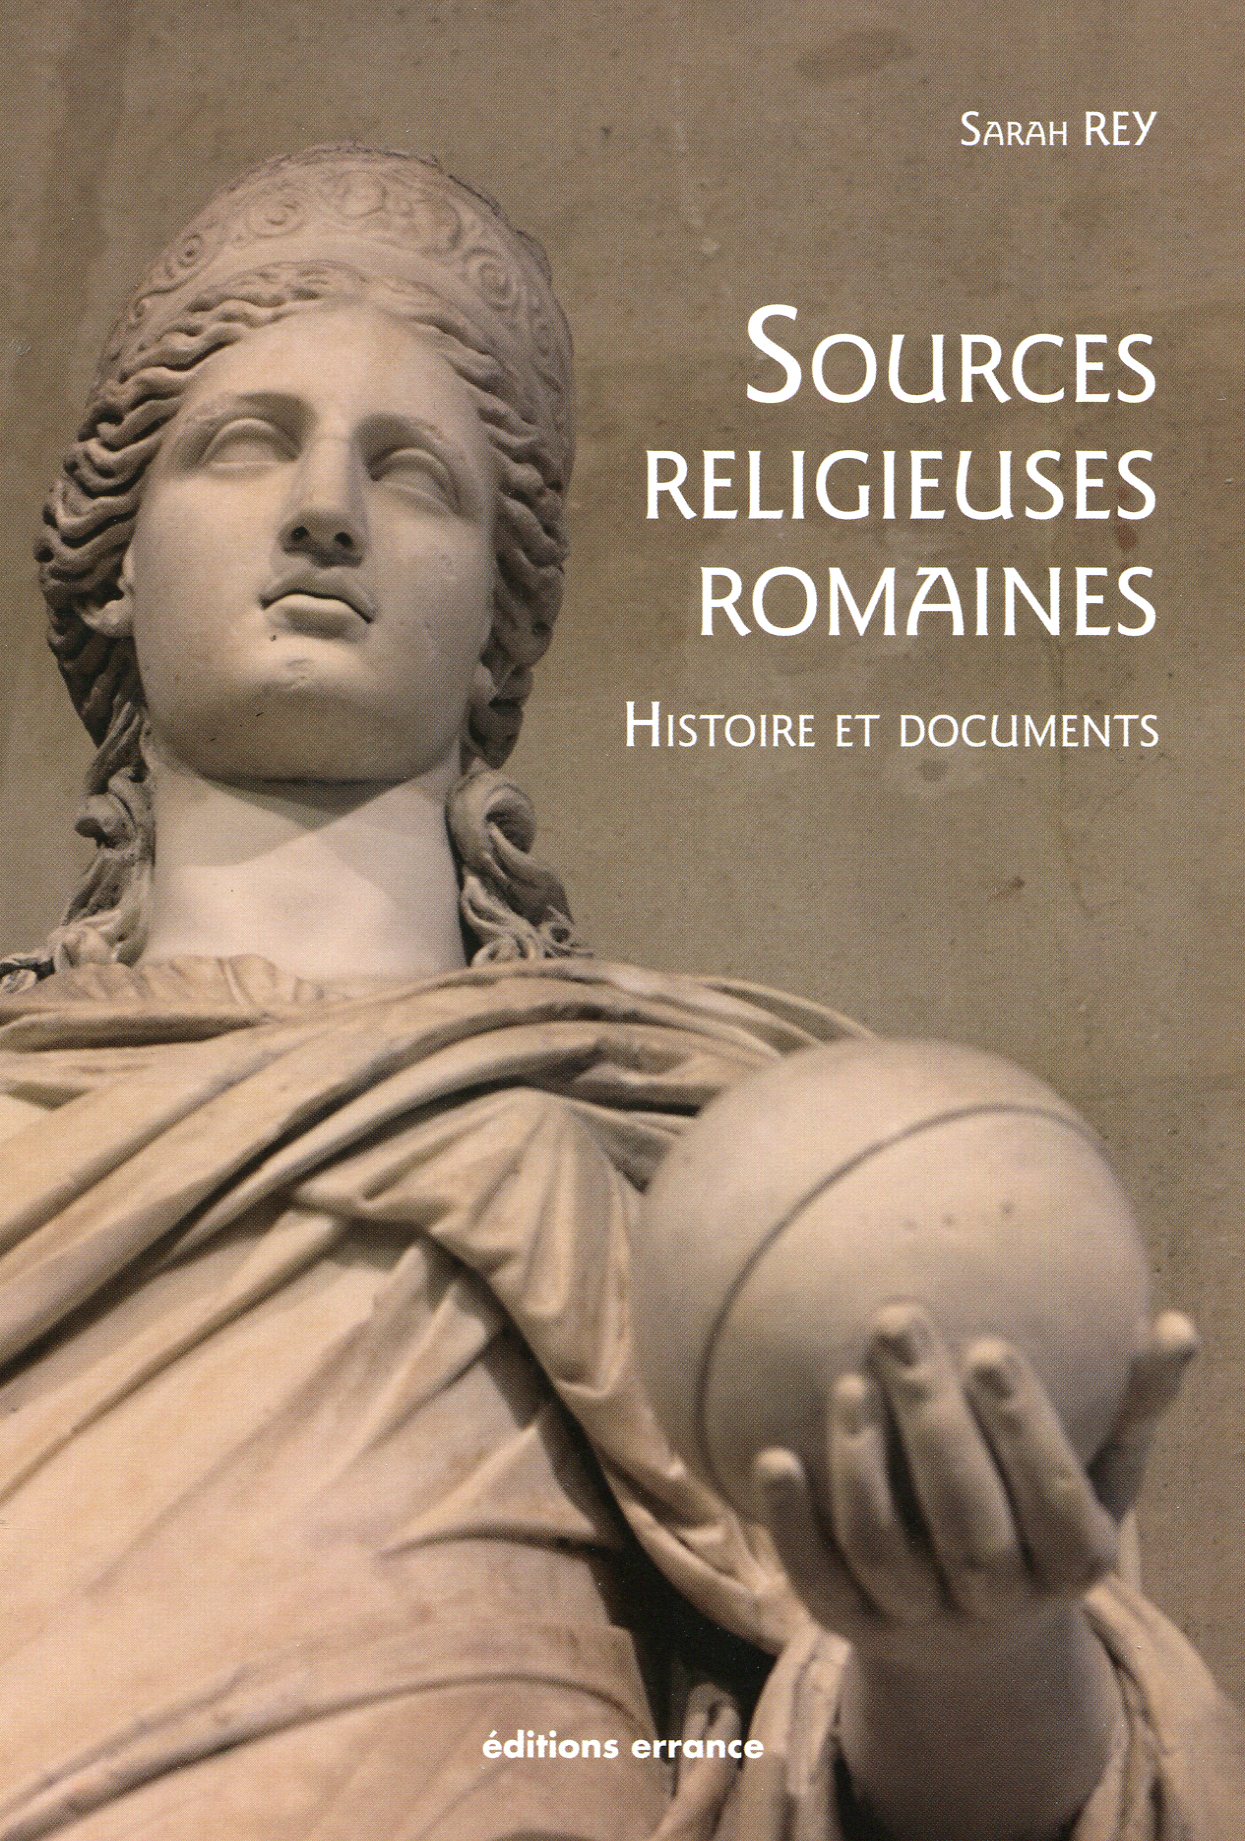 Sources religieuses romaines. Histoire et documents, 2017, 127 p.